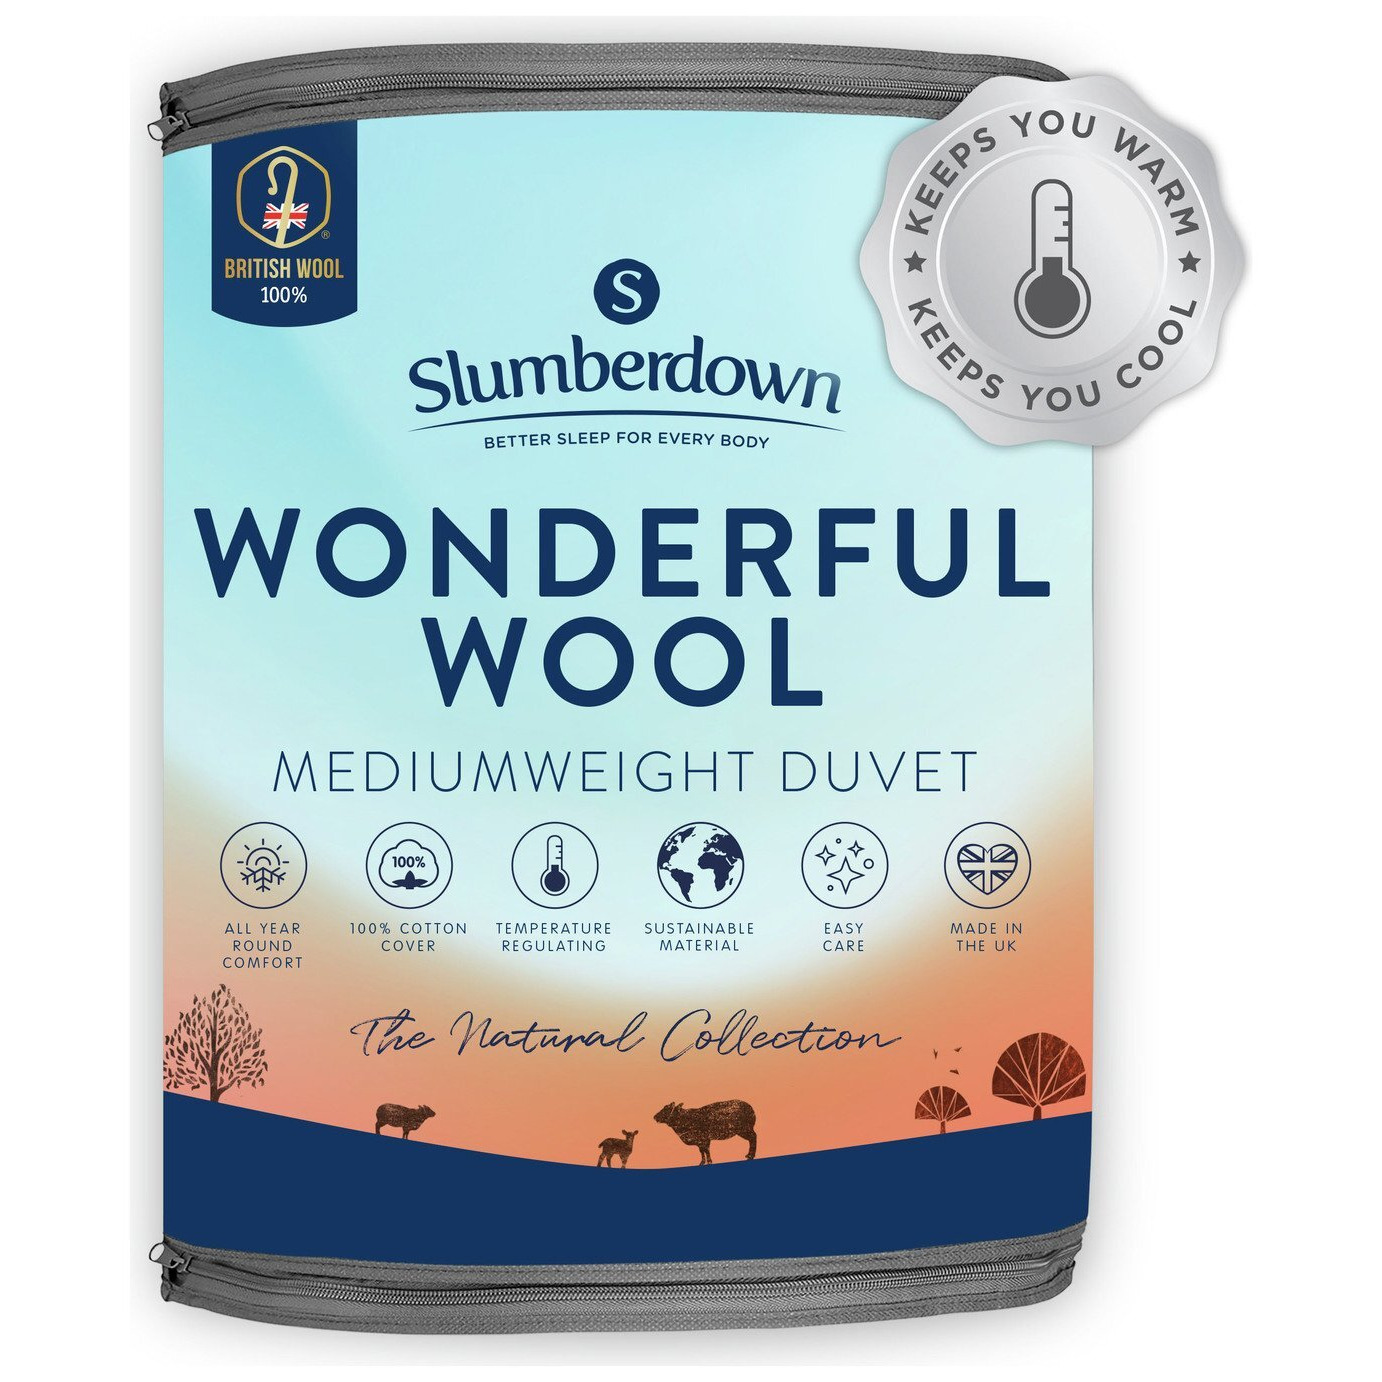 Slumberdown Wonderful Wool Medium Weight Duvet - Superking - image 1